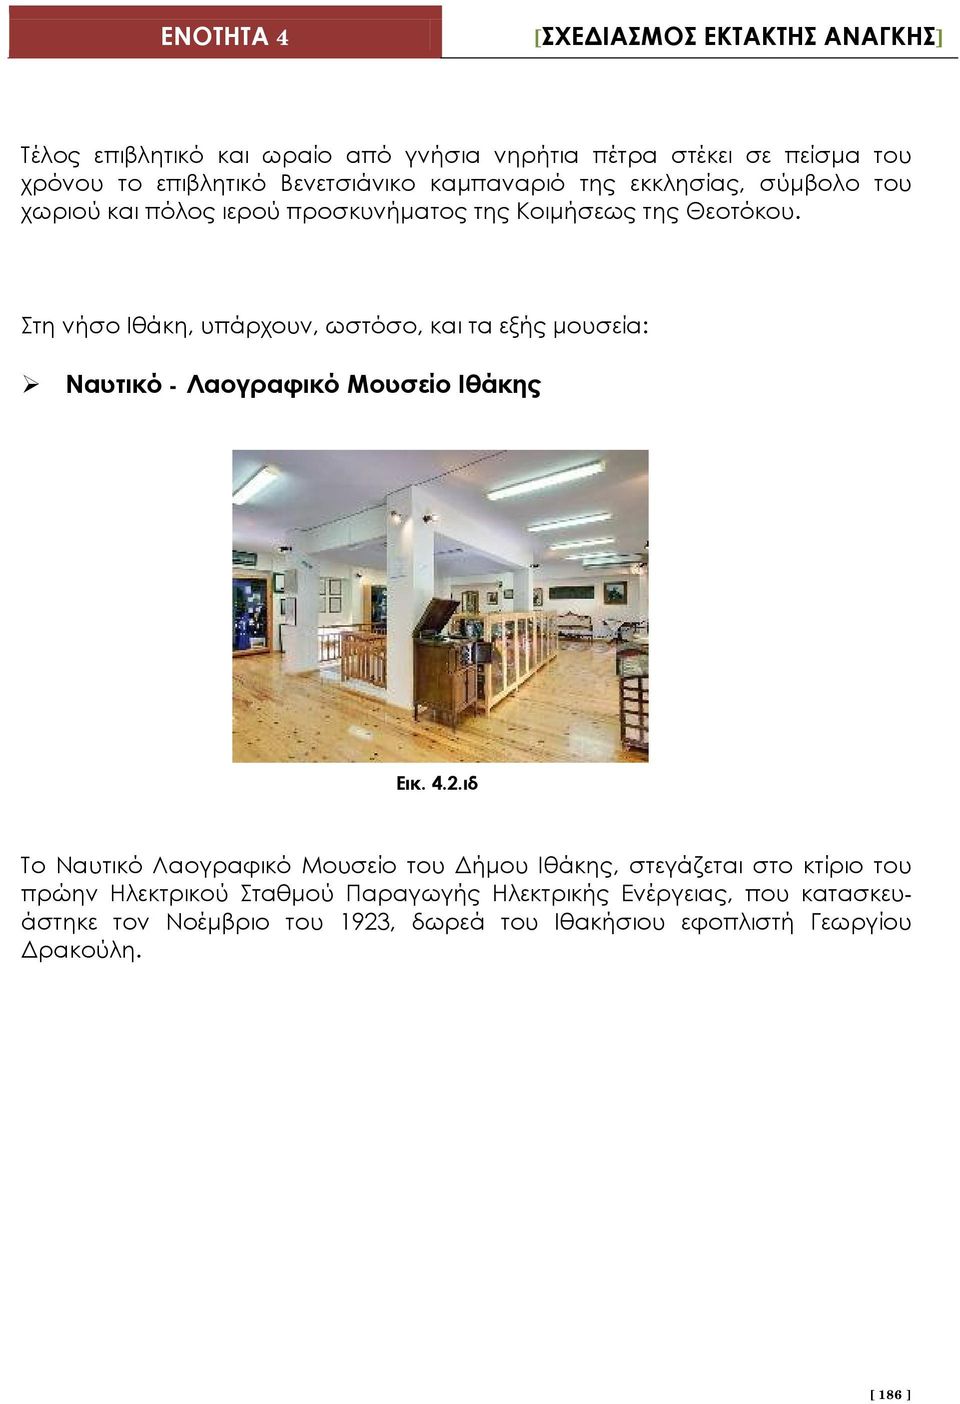 Στη νήσο Ιθάκη, υπάρχουν, ωστόσο, και τα εξής μουσεία: Ναυτικό - Λαογραφικό Μουσείο Ιθάκης Εικ. 4.2.